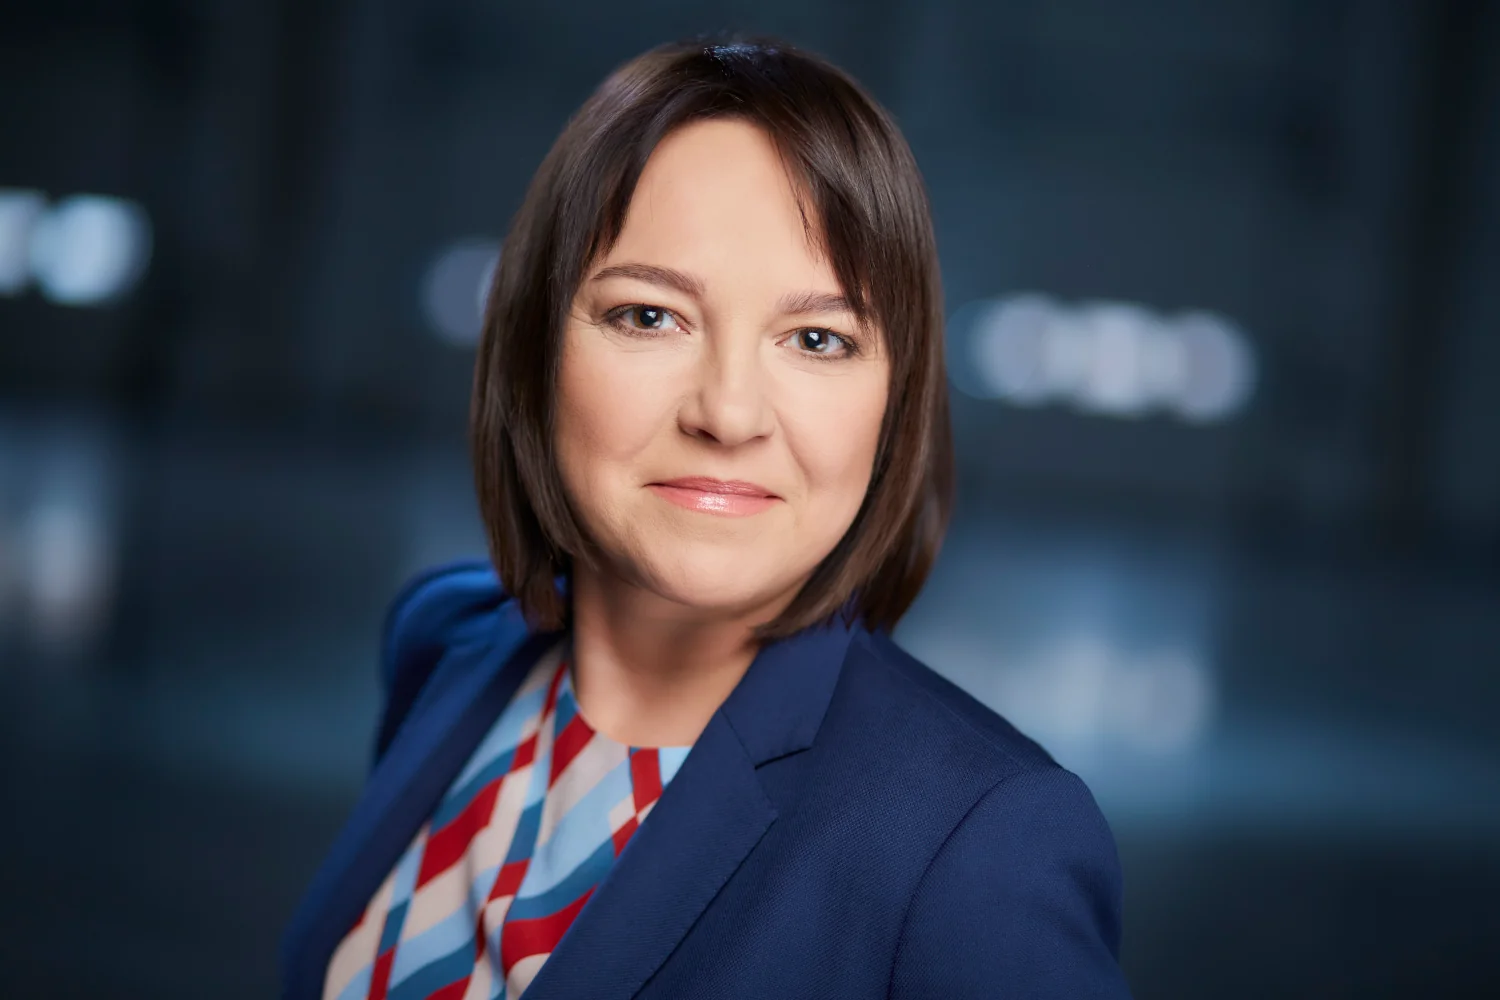 Agnieszka Góźdź, Dyrektor Działu Sprzedaży w MLP Group S.A